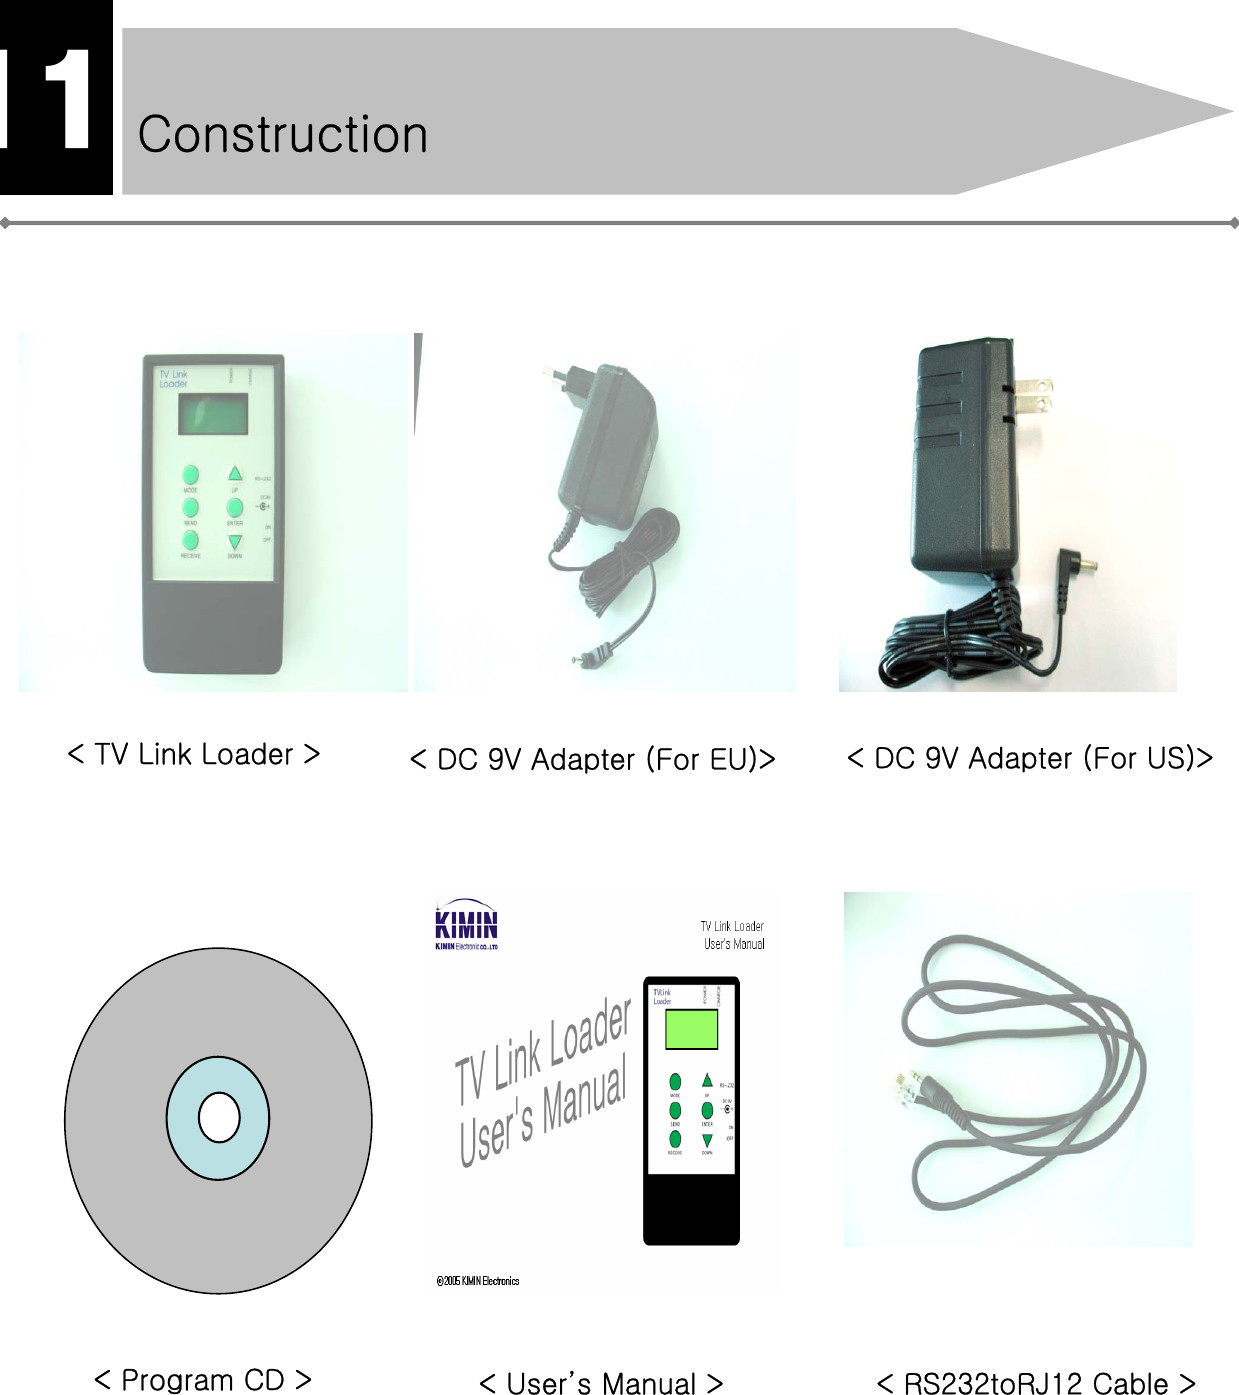 Construction11&lt; TV Link Loader &gt; &lt; DC 9V Adapter (For EU)&gt;&lt; RS232toRJ12 Cable &gt;&lt; Program CD &gt; &lt; User’s Manual &gt;&lt; DC 9V Adapter (For US)&gt;